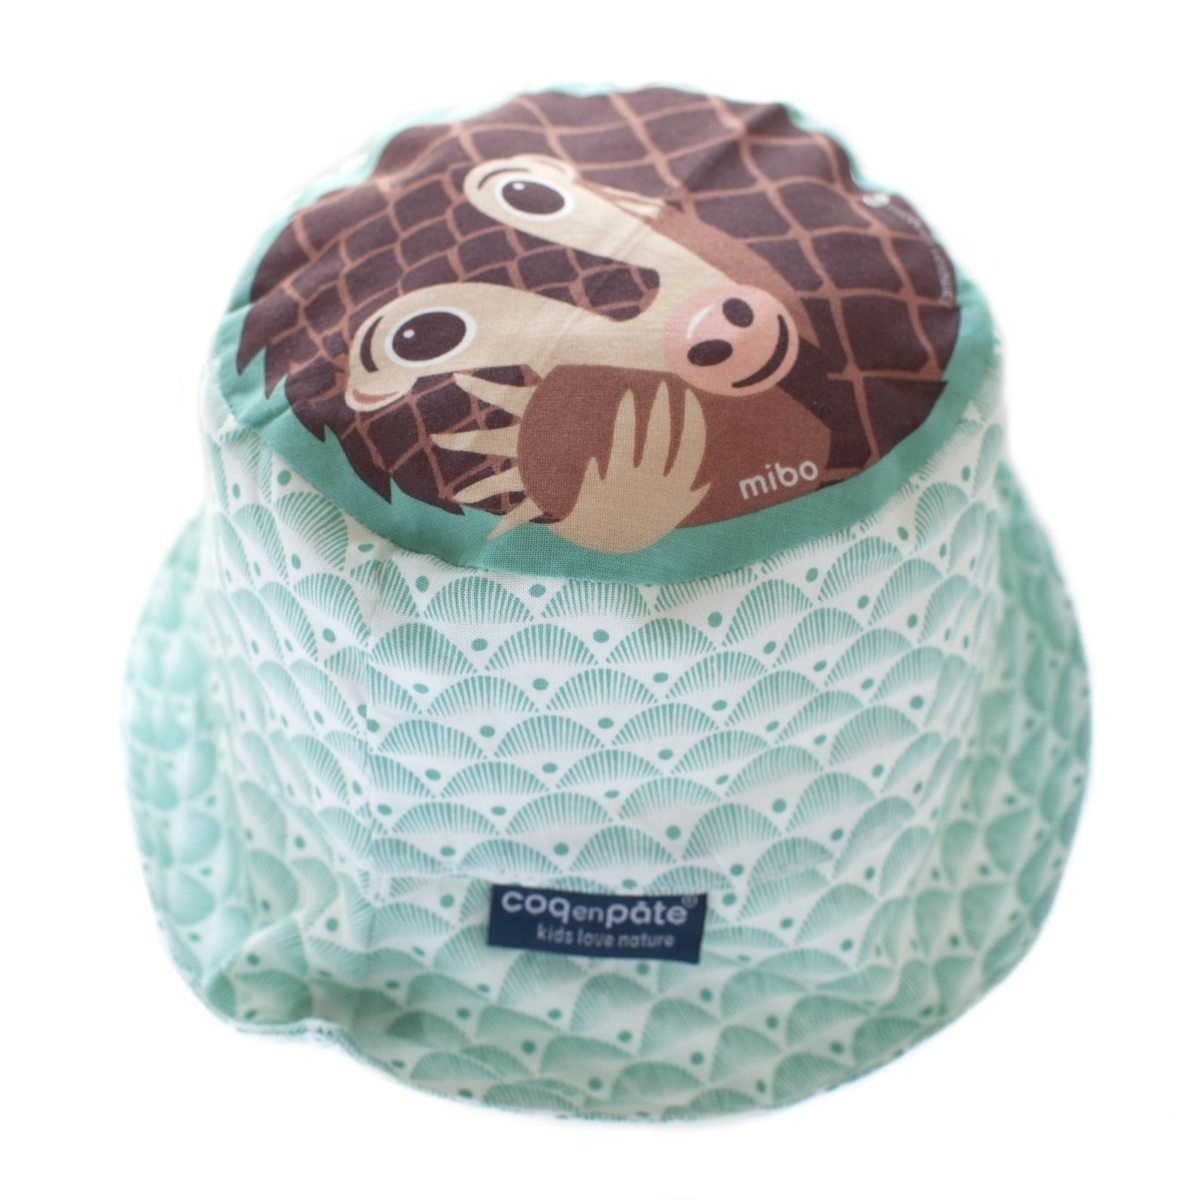 COQ EN PATE Sonnenhut Farbenfroher Kinder-Hut mit Tiermotiven und Mustern Sonnenschutz Schuppentier - Größe: S